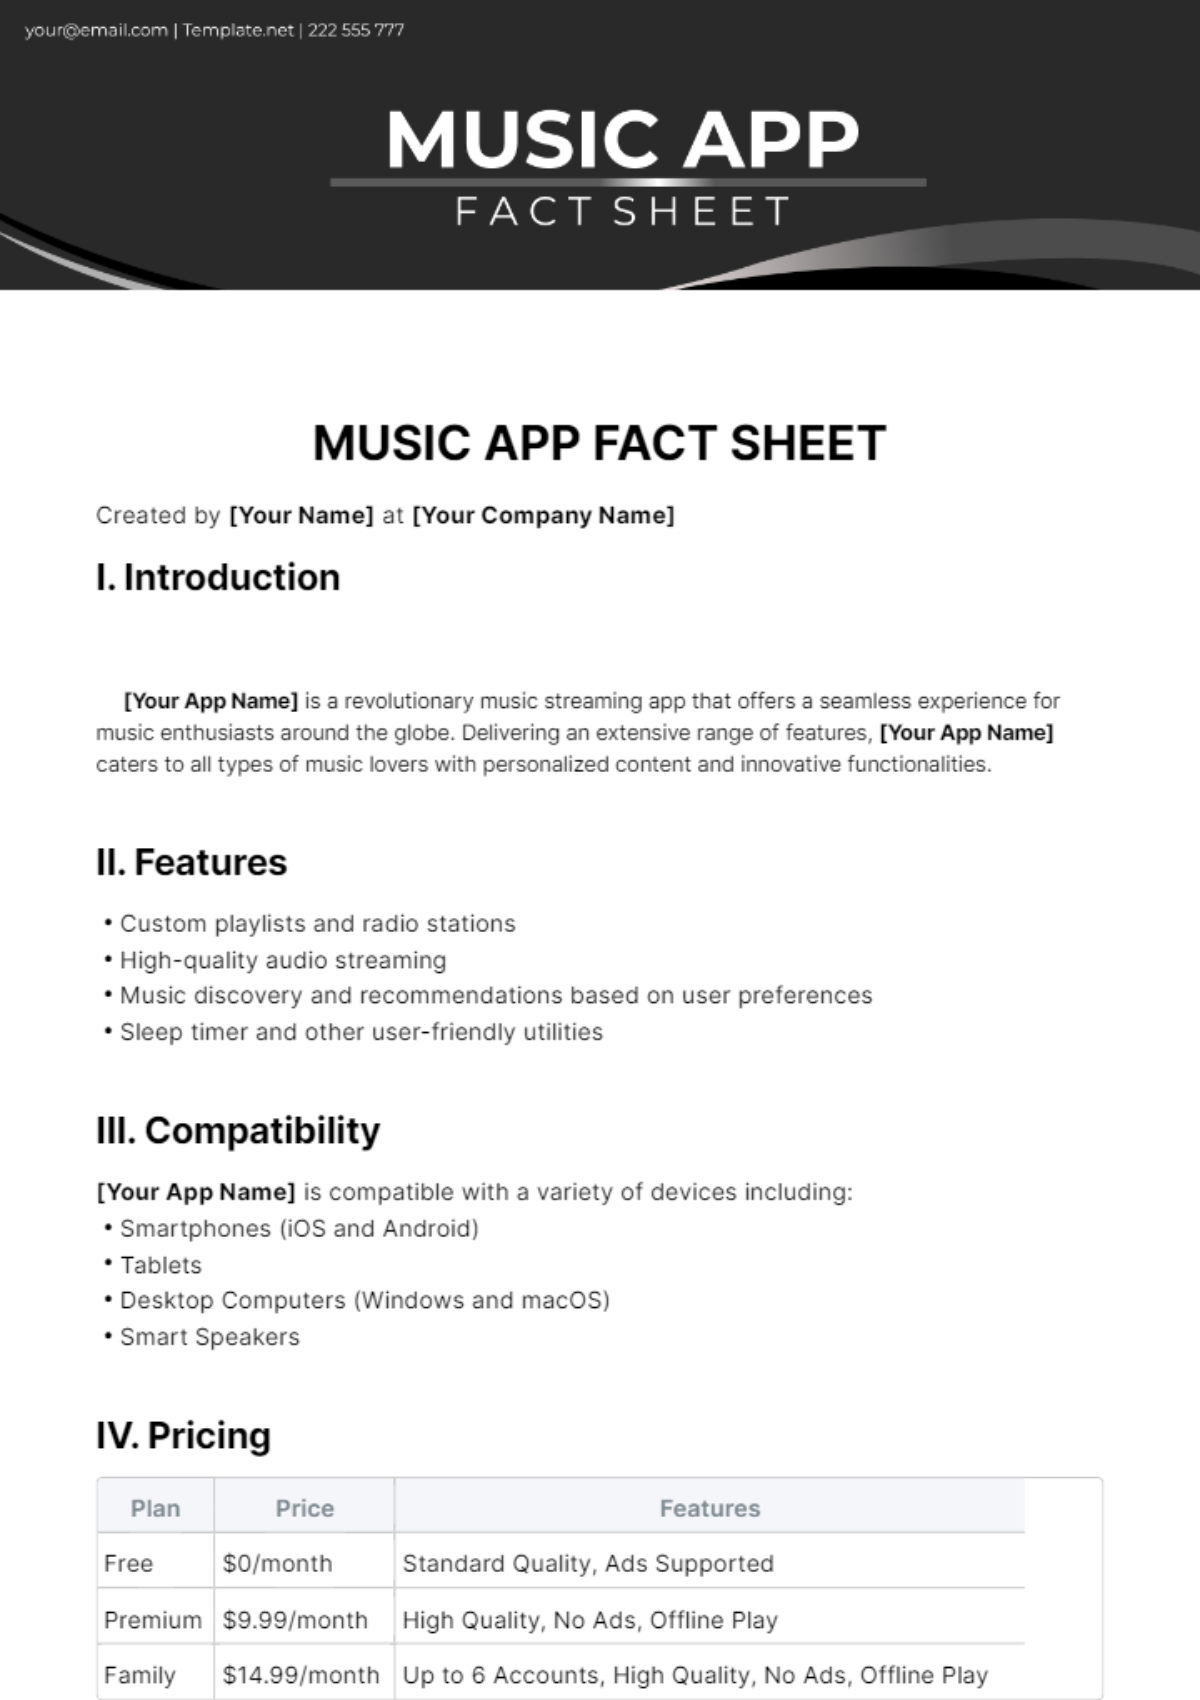 Music App Fact Sheet Template